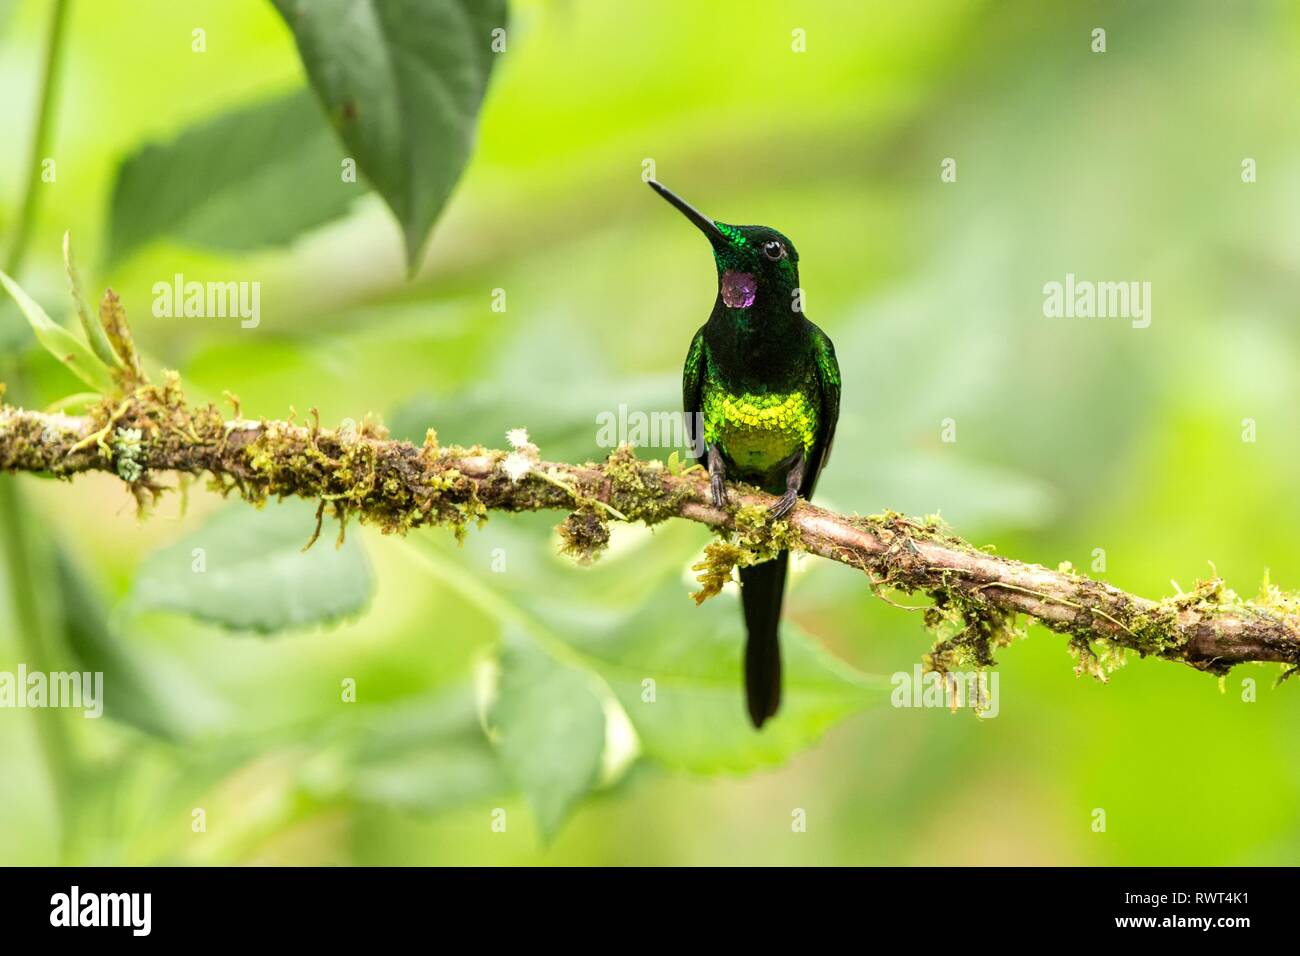 Brillant impératrice assis sur hummingbird, direction générale de la forêt tropicale,Colombie,bird perching,petit oiseau posé sur fleur dans jardin,bac claire Banque D'Images